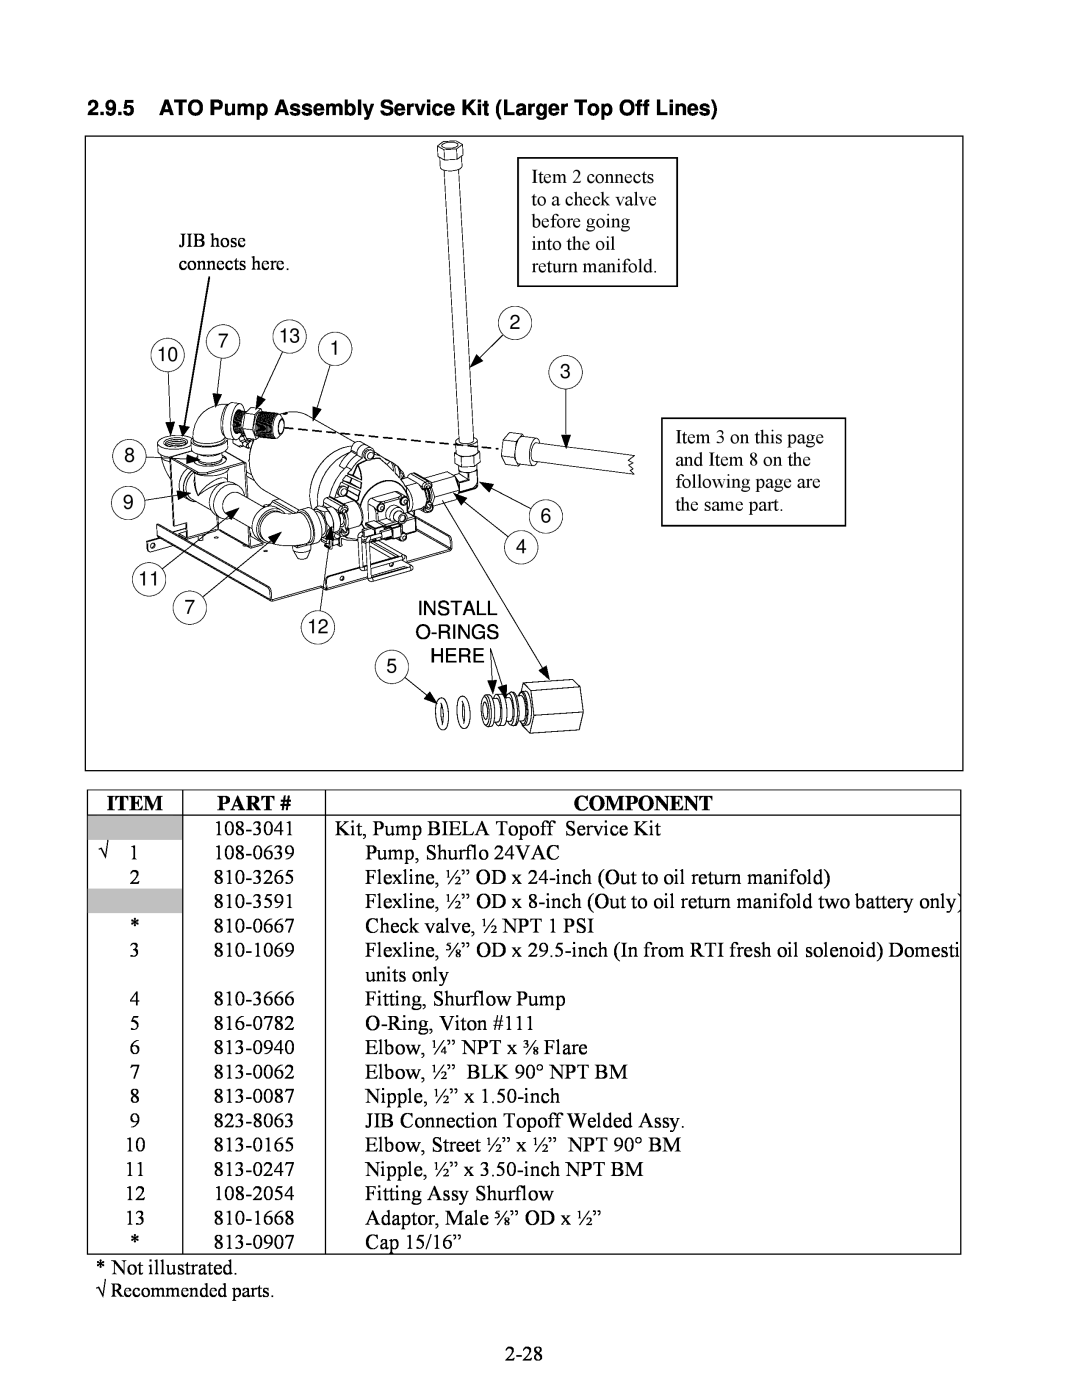 Frymaster BIELA14 manual Item, Part #, Component, 108-3041 